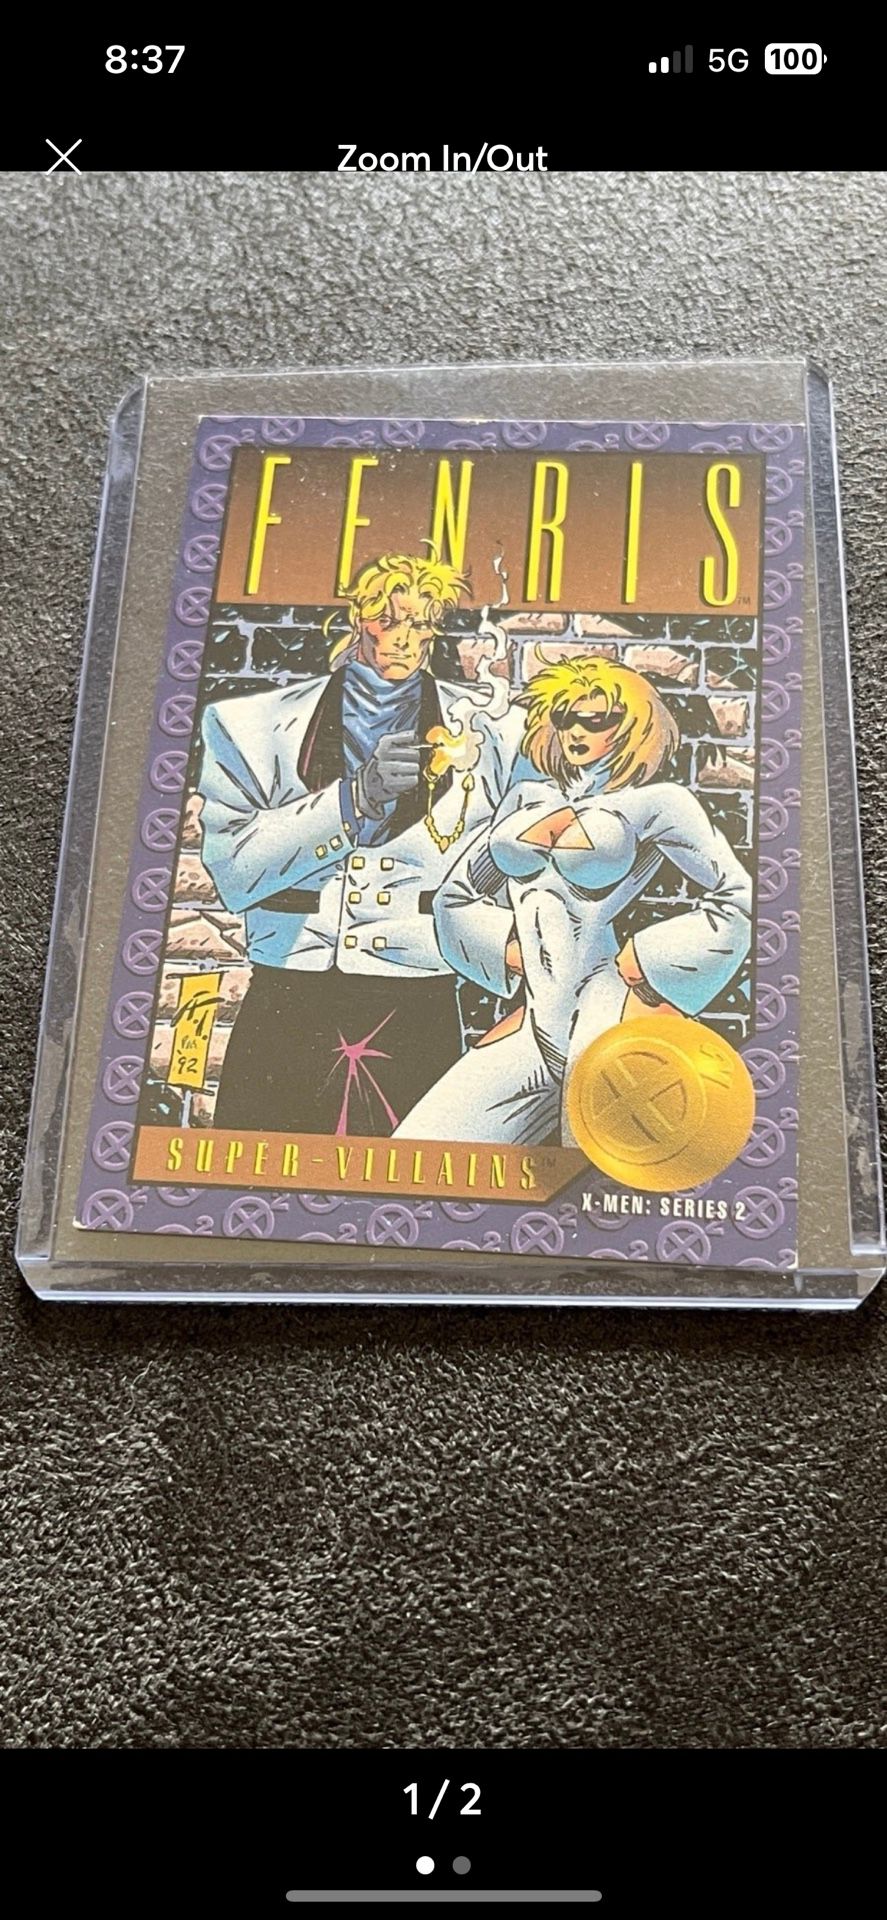 1993 X-Men Series 2 #64 Fenris Marvel Super Villains